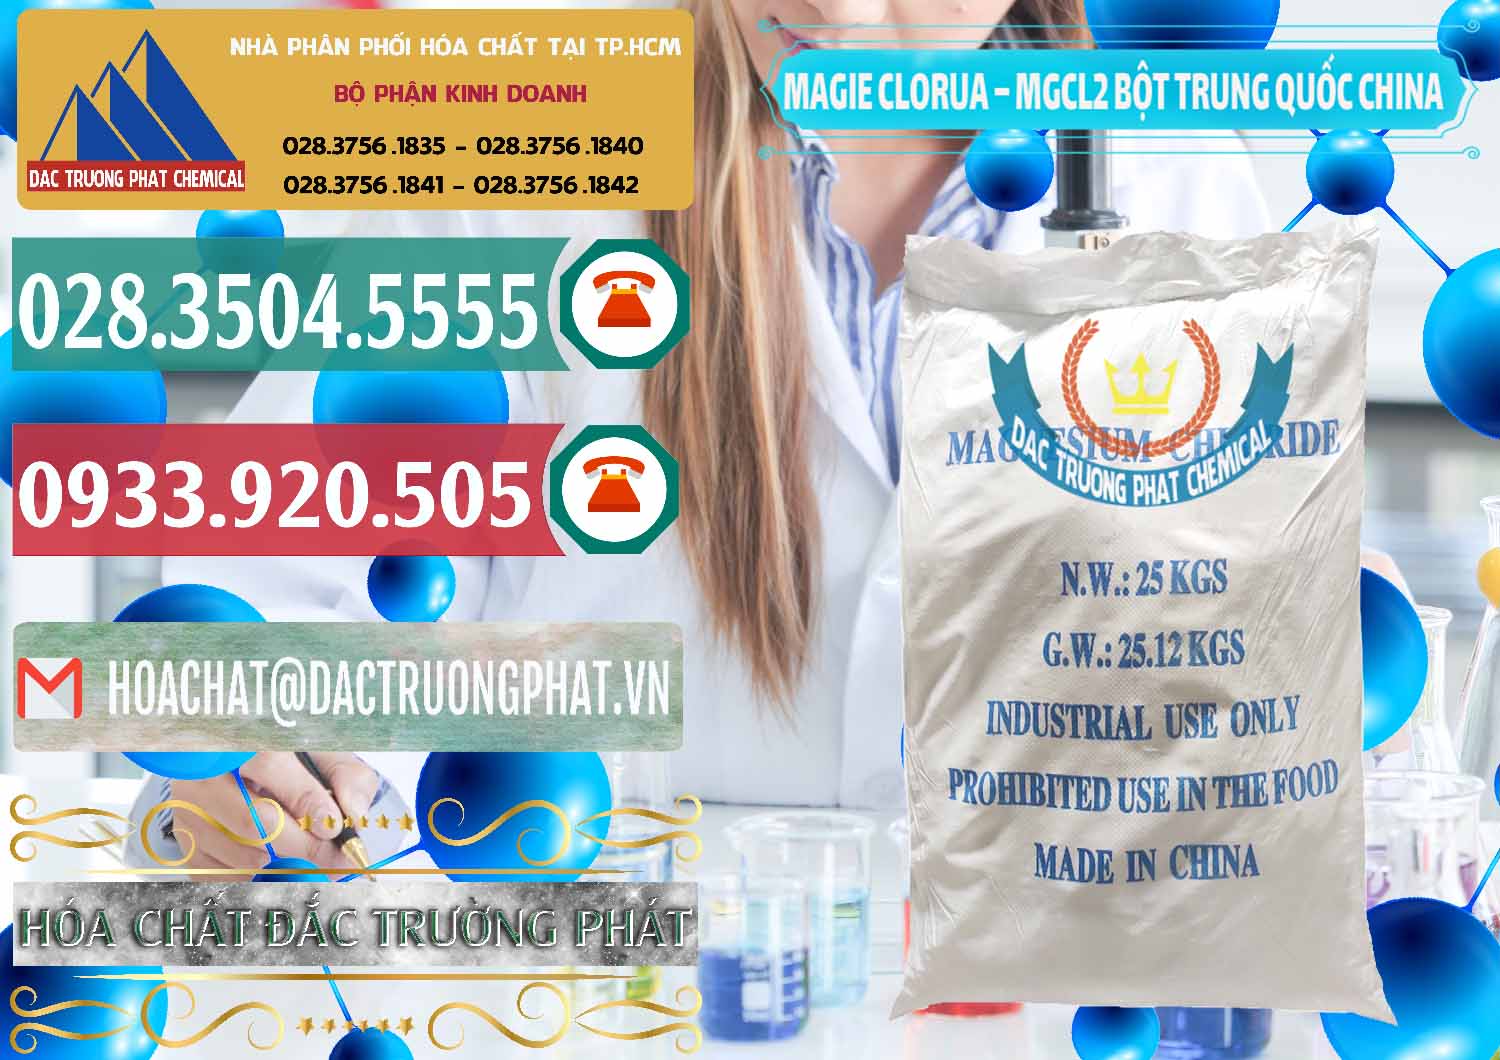 Nơi phân phối - bán Magie Clorua – MGCL2 96% Dạng Bột Bao Chữ Xanh Trung Quốc China - 0207 - Công ty cung cấp & nhập khẩu hóa chất tại TP.HCM - muabanhoachat.vn